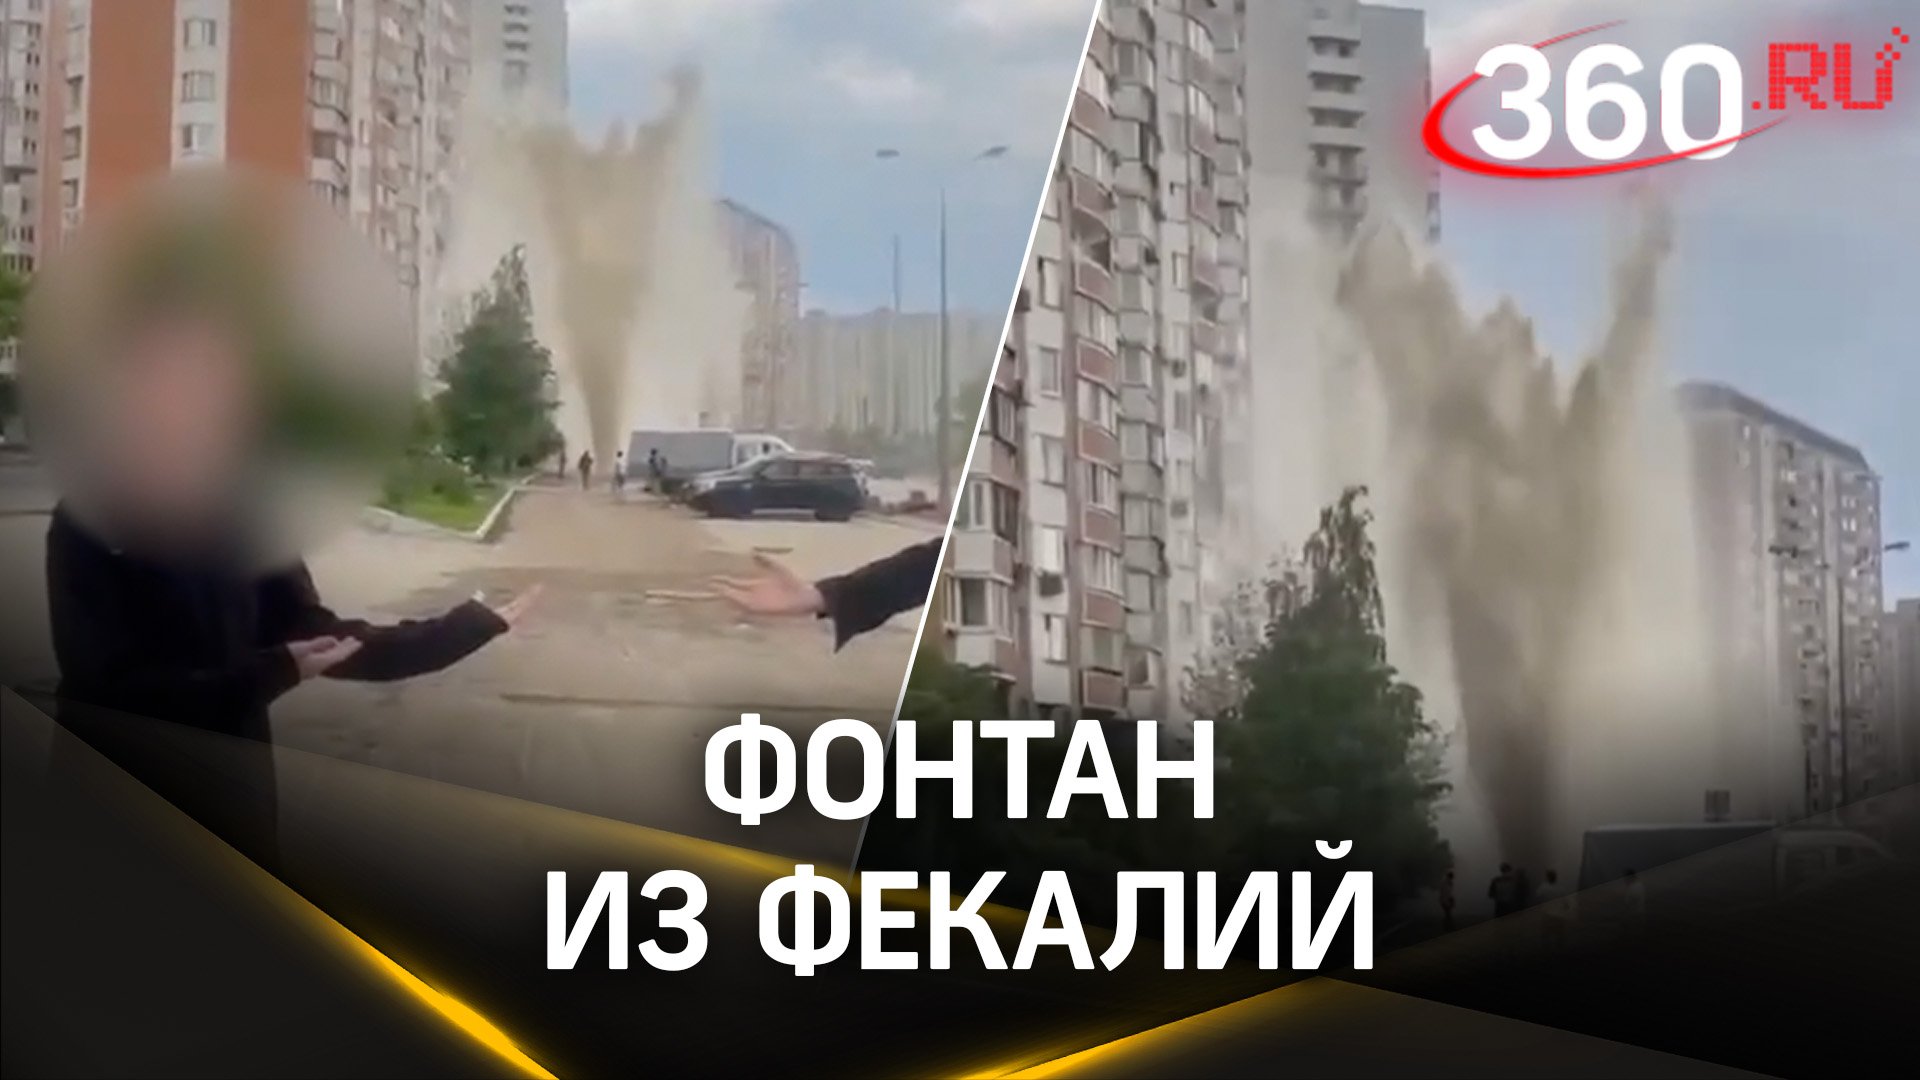 Видео: фонтан фекалий бьёт из-под земли на юго-востоке Москвы